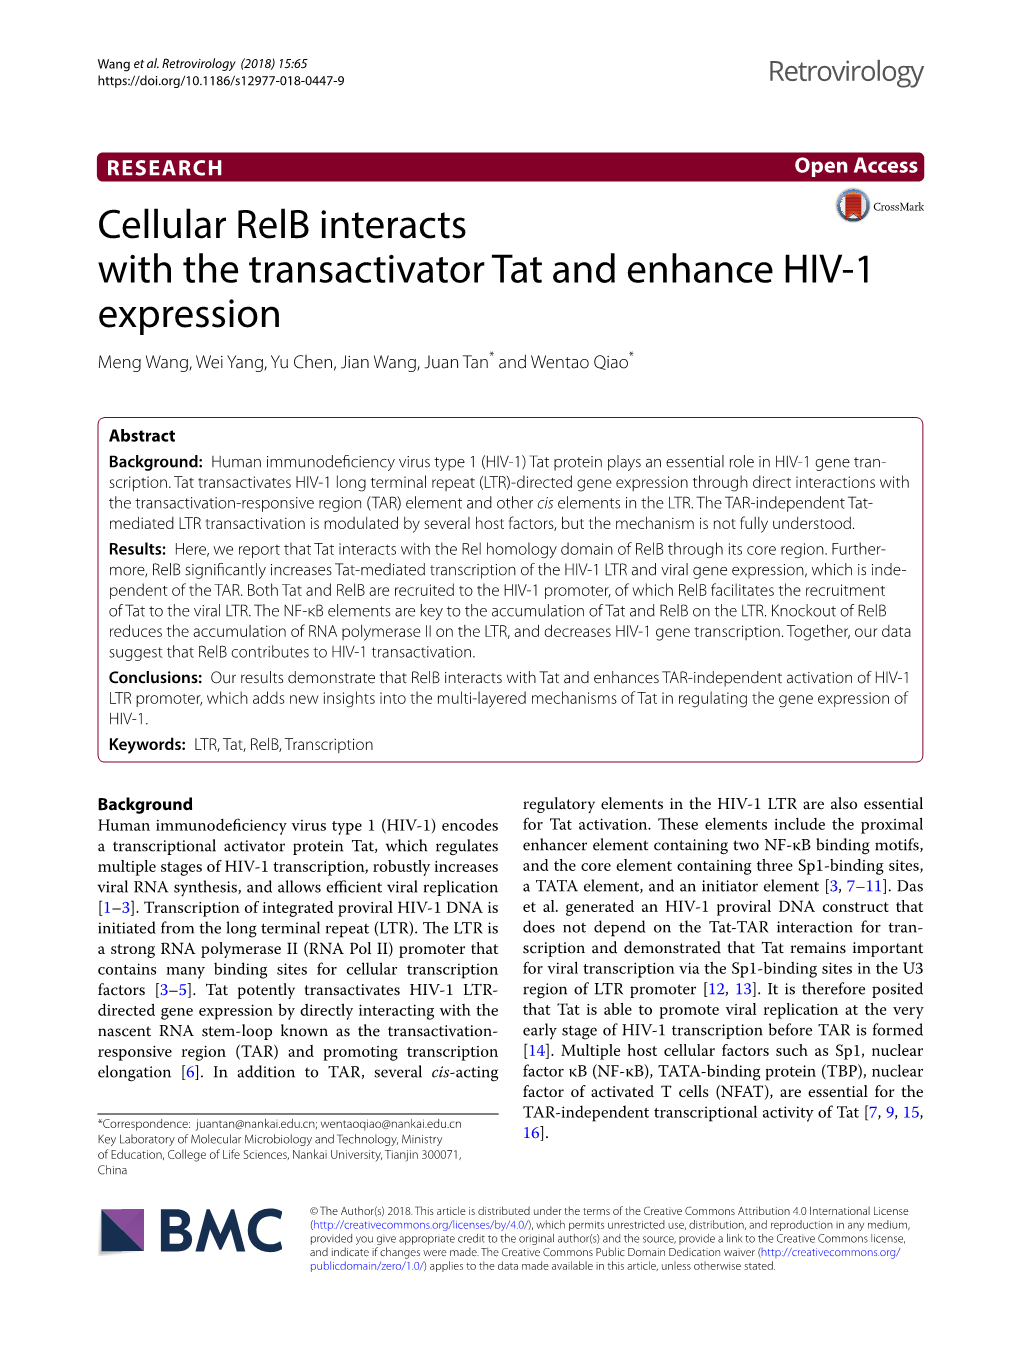 Cellular Relb Interacts with the Transactivator Tat and Enhance HIV‑1 Expression Meng Wang, Wei Yang, Yu Chen, Jian Wang, Juan Tan* and Wentao Qiao*